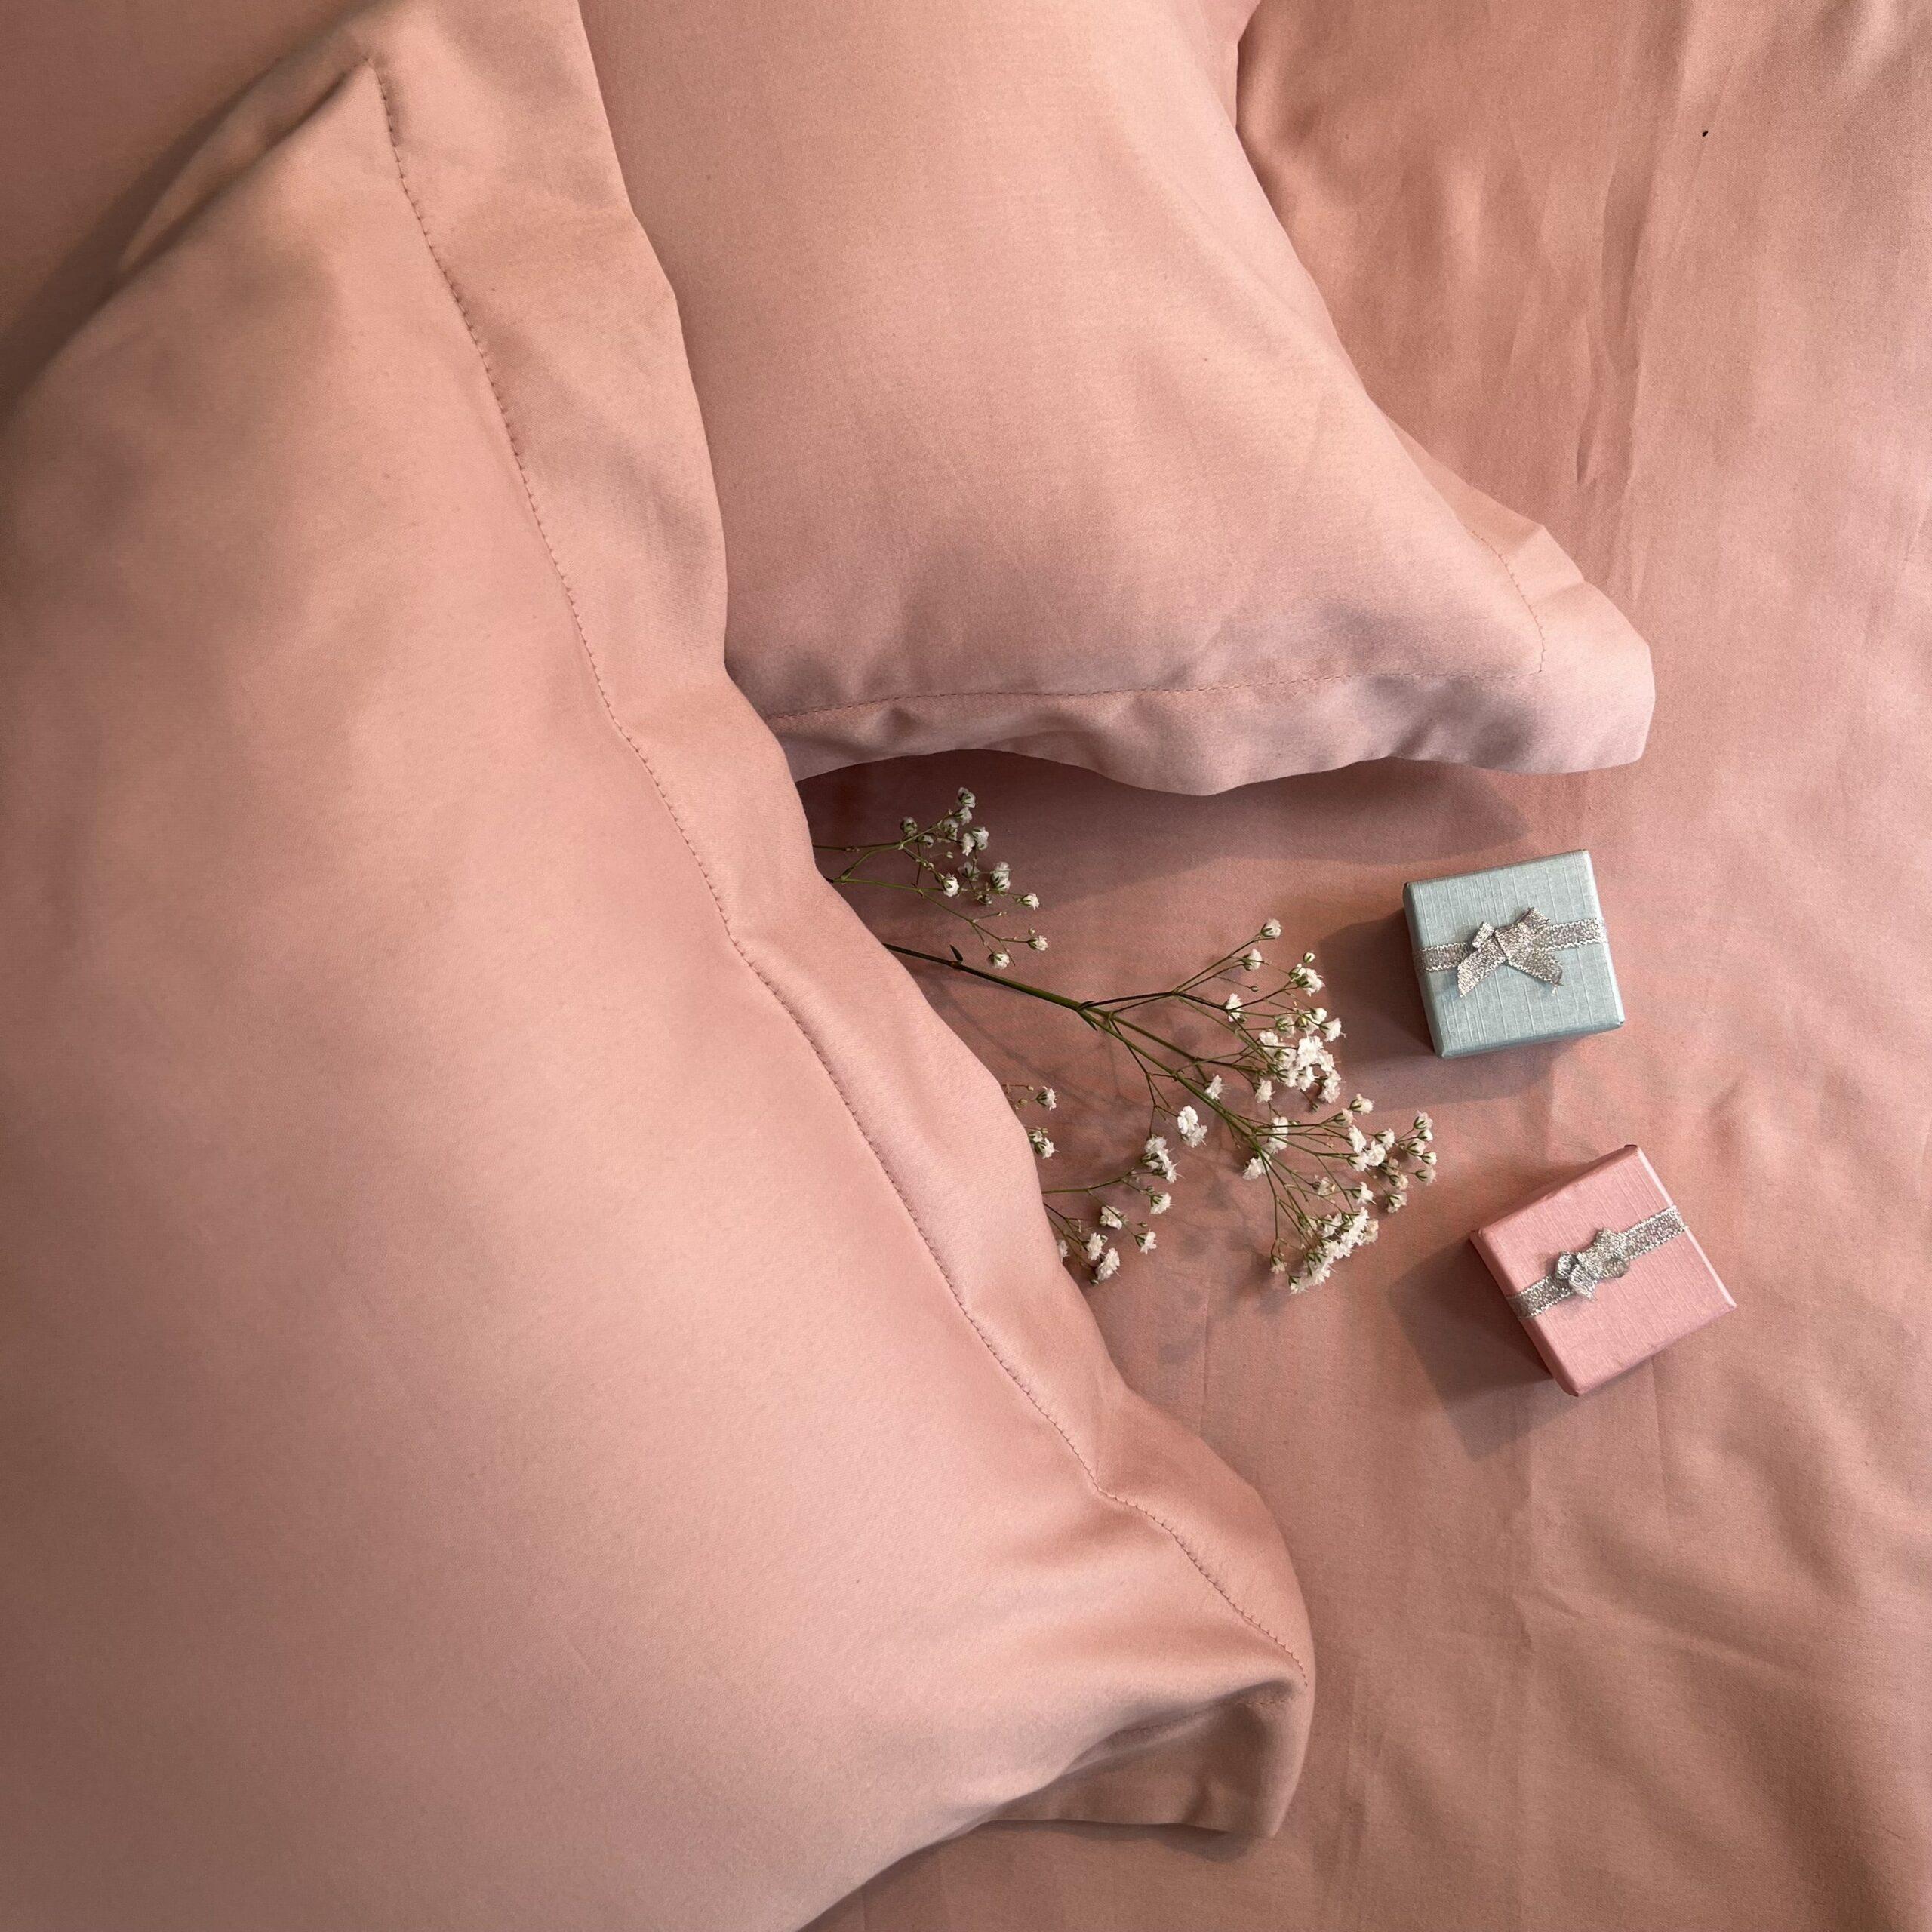 Sadyaska Rose Pillow Covers (Set of 2)